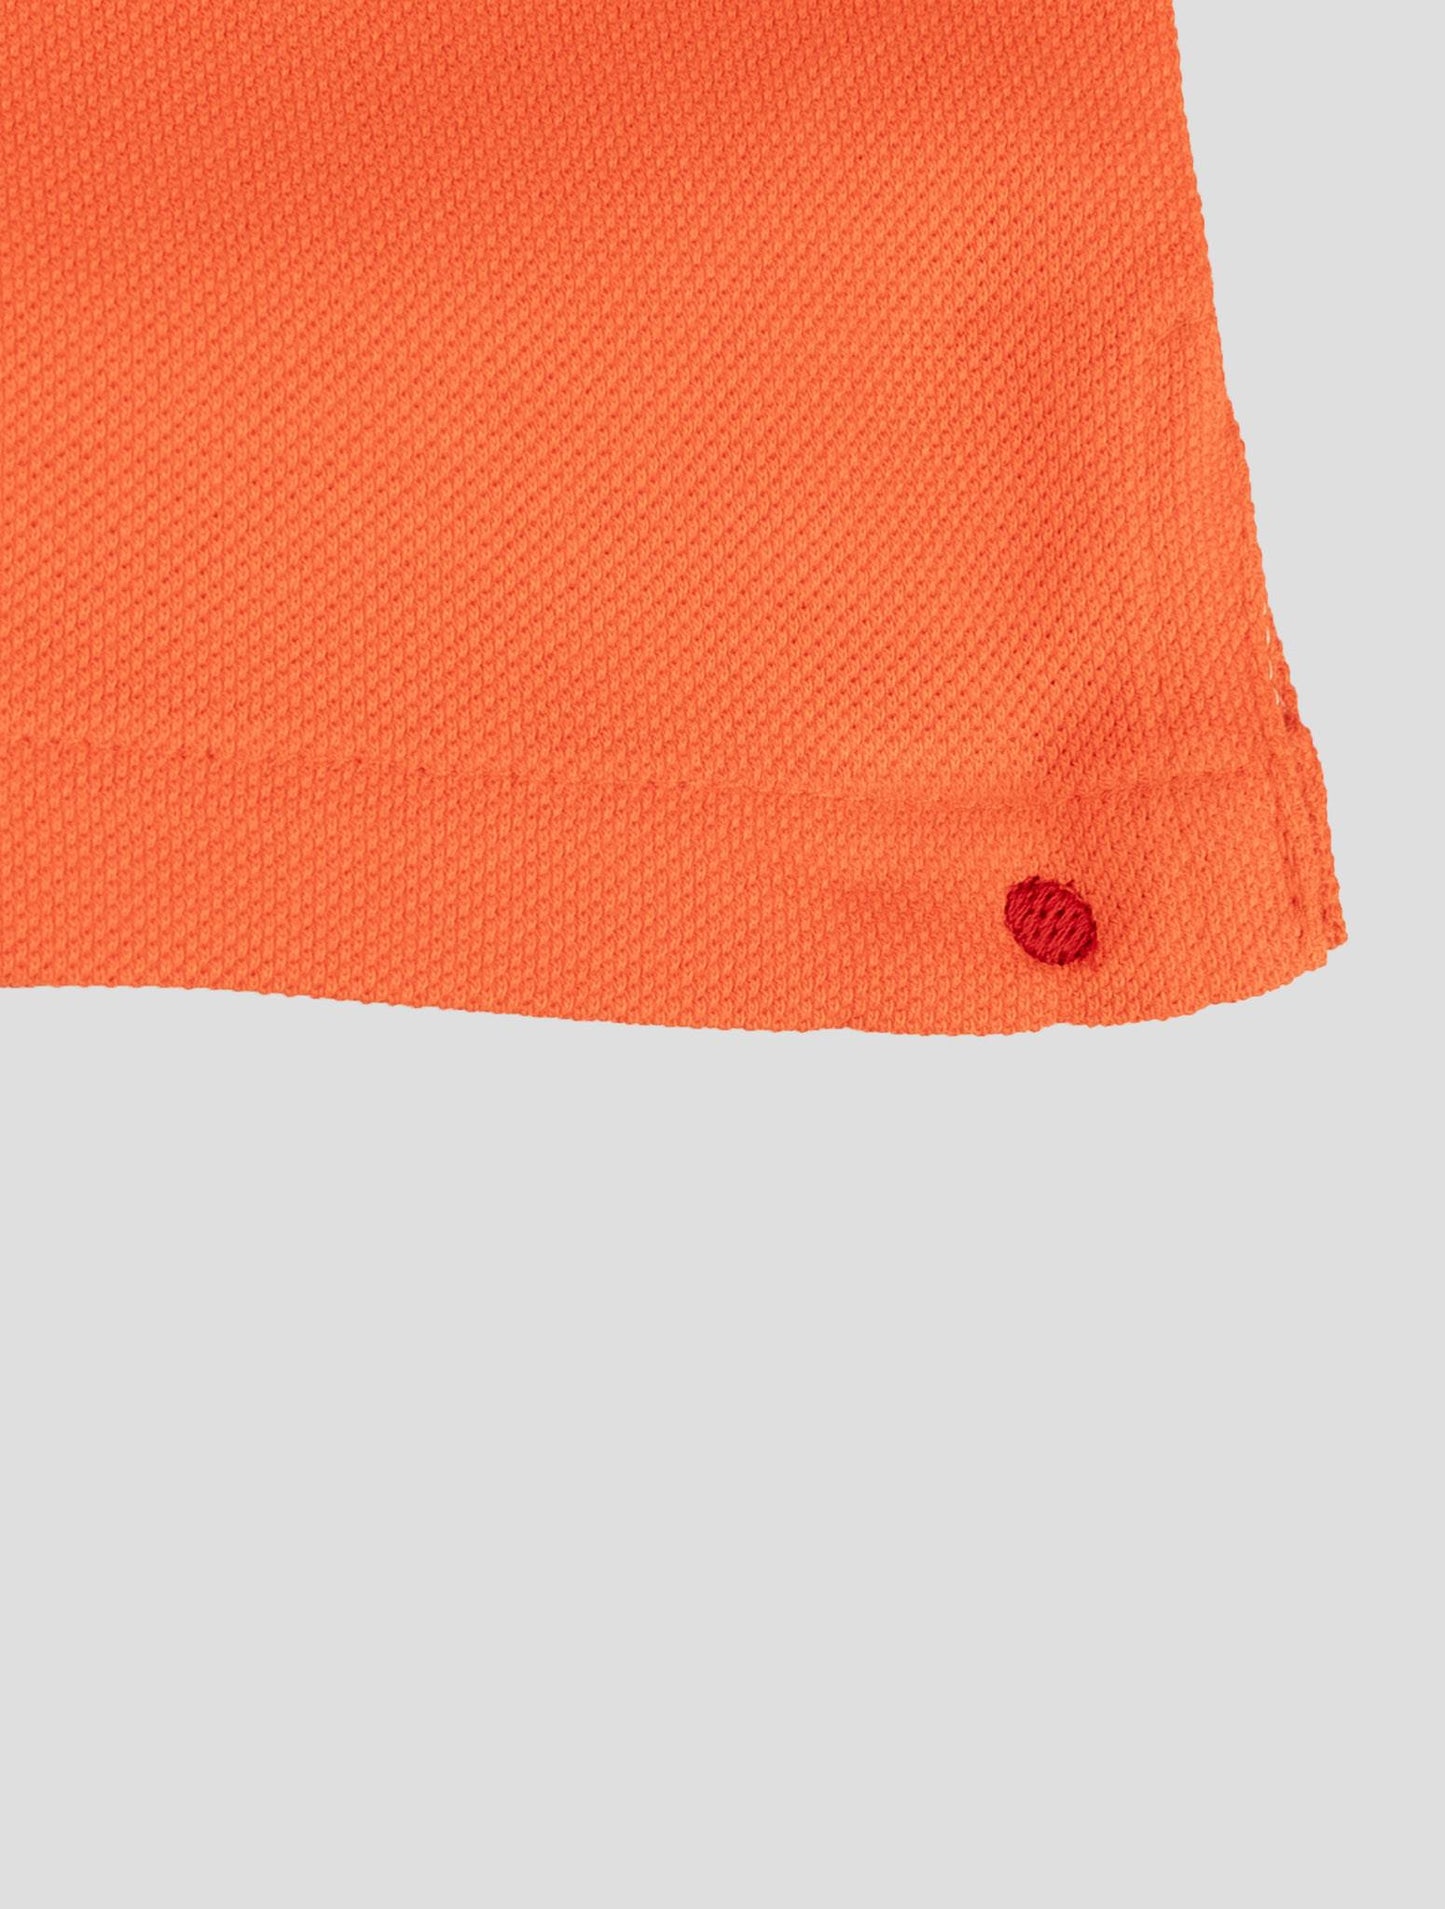 Pantalon court en coton orange Kiton